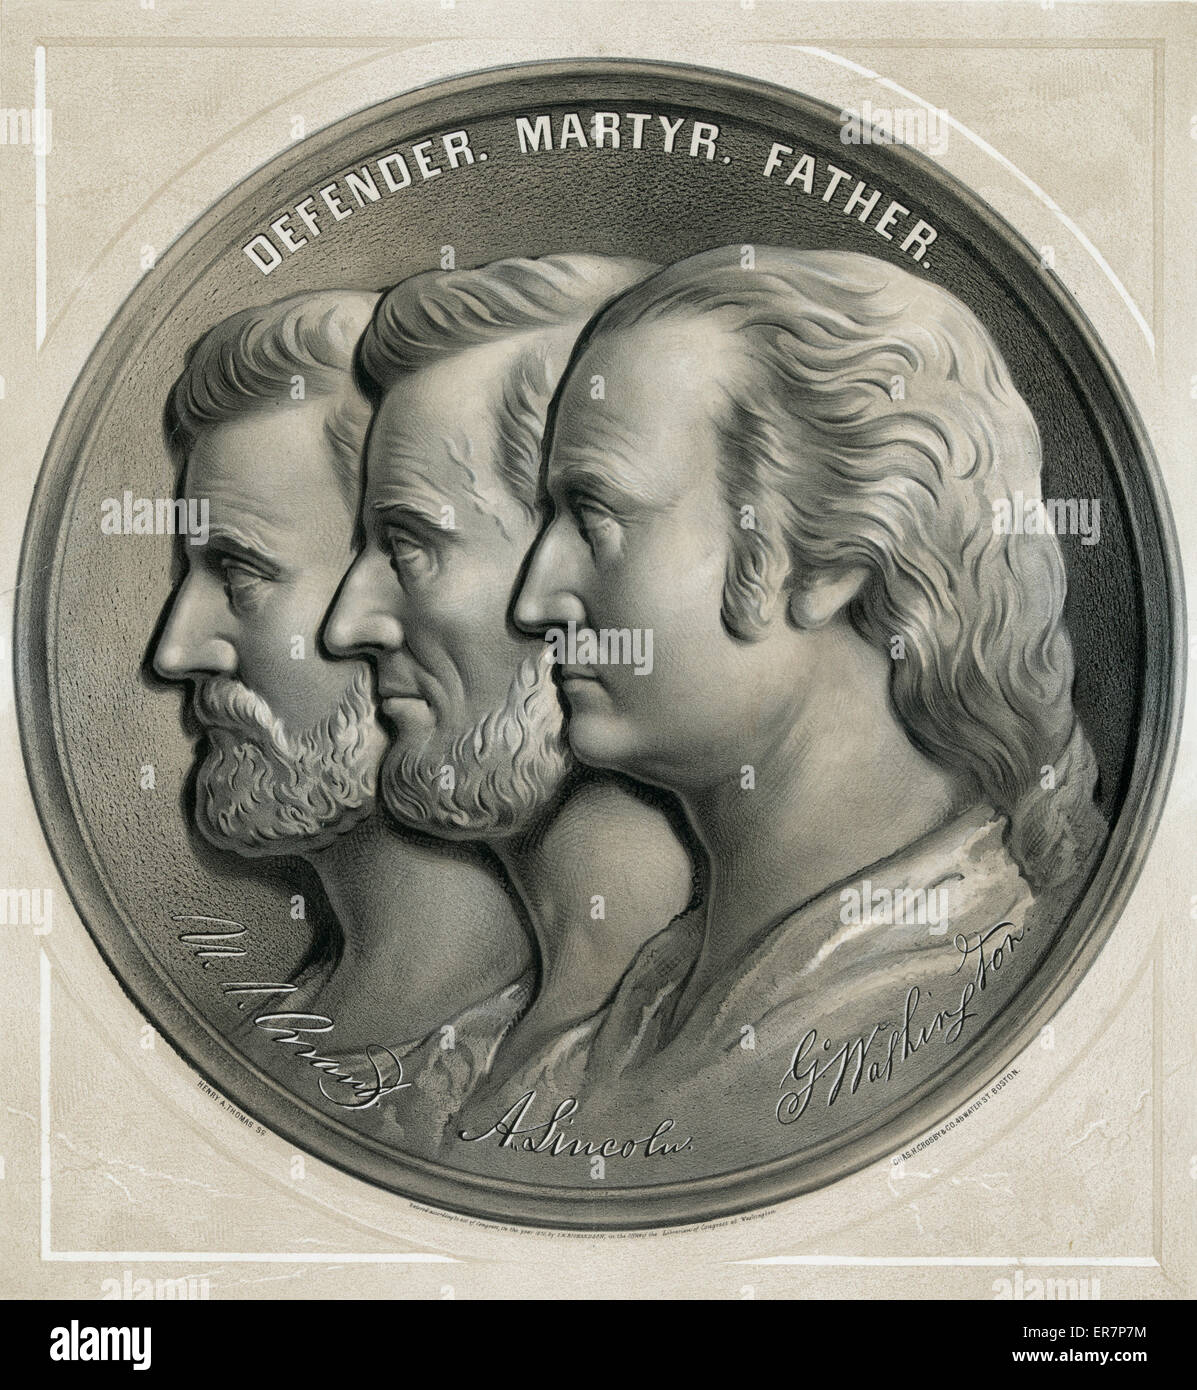 Verteidiger, Märtyrer, Vater - USA Grant, A. Lincoln, G. Washin Stockfoto